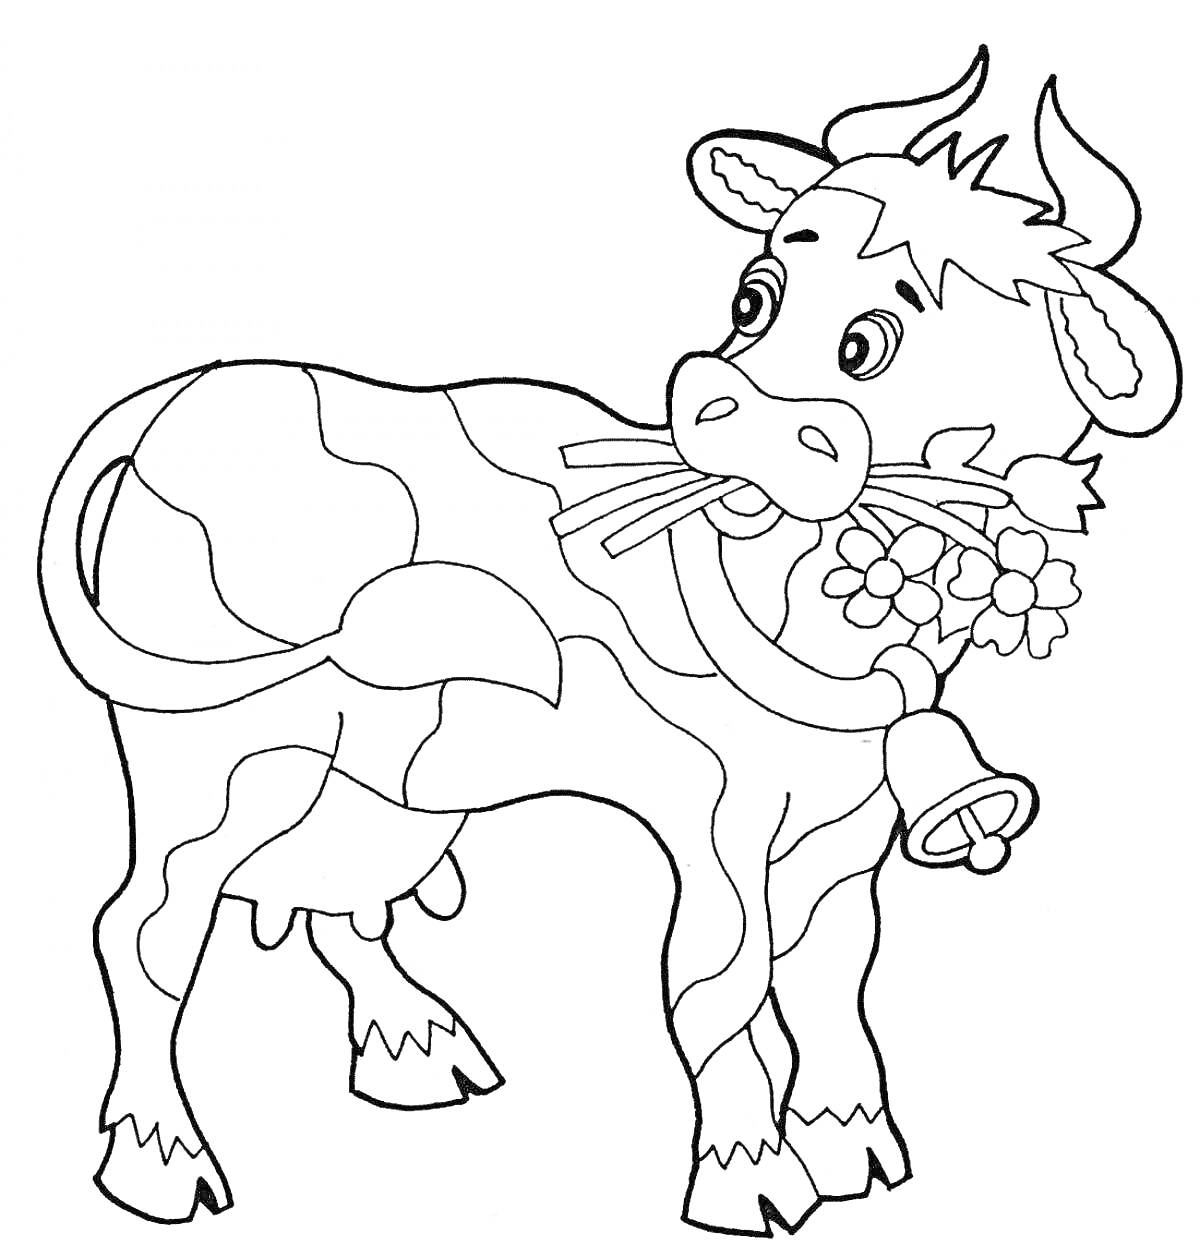 Раскраска Корова с колокольчиком и цветком на шее, стоящая и смотрящая назад.